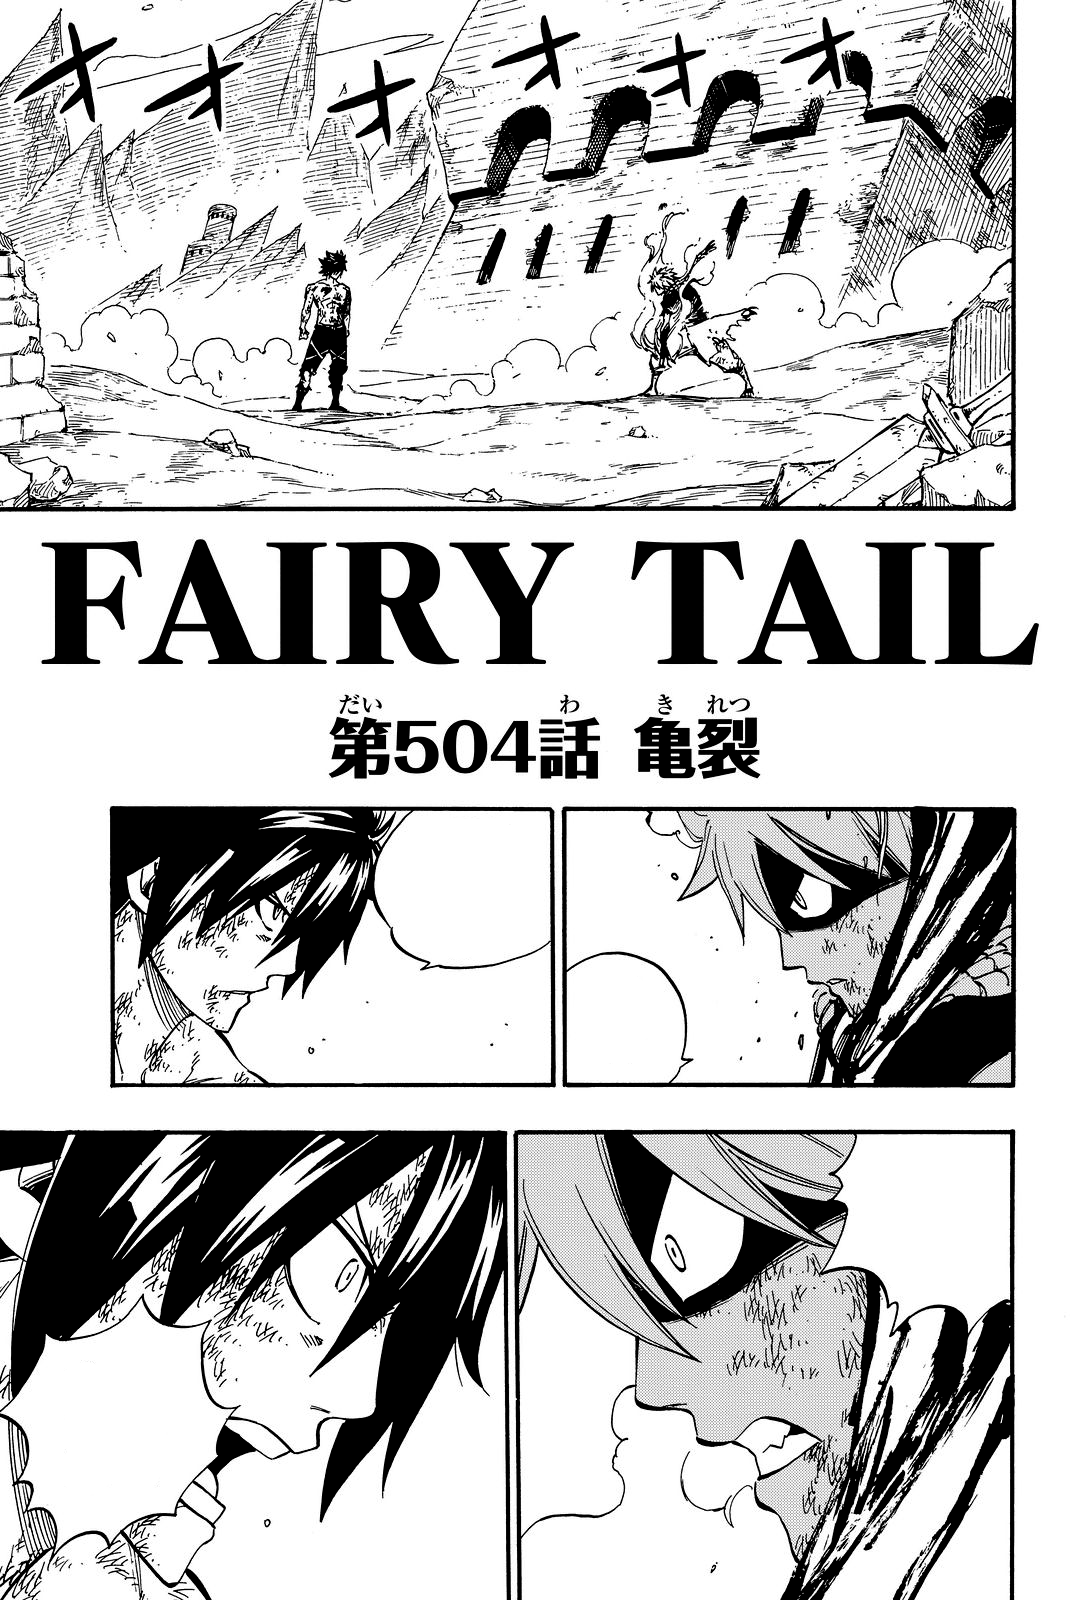 manga fairy tail 469